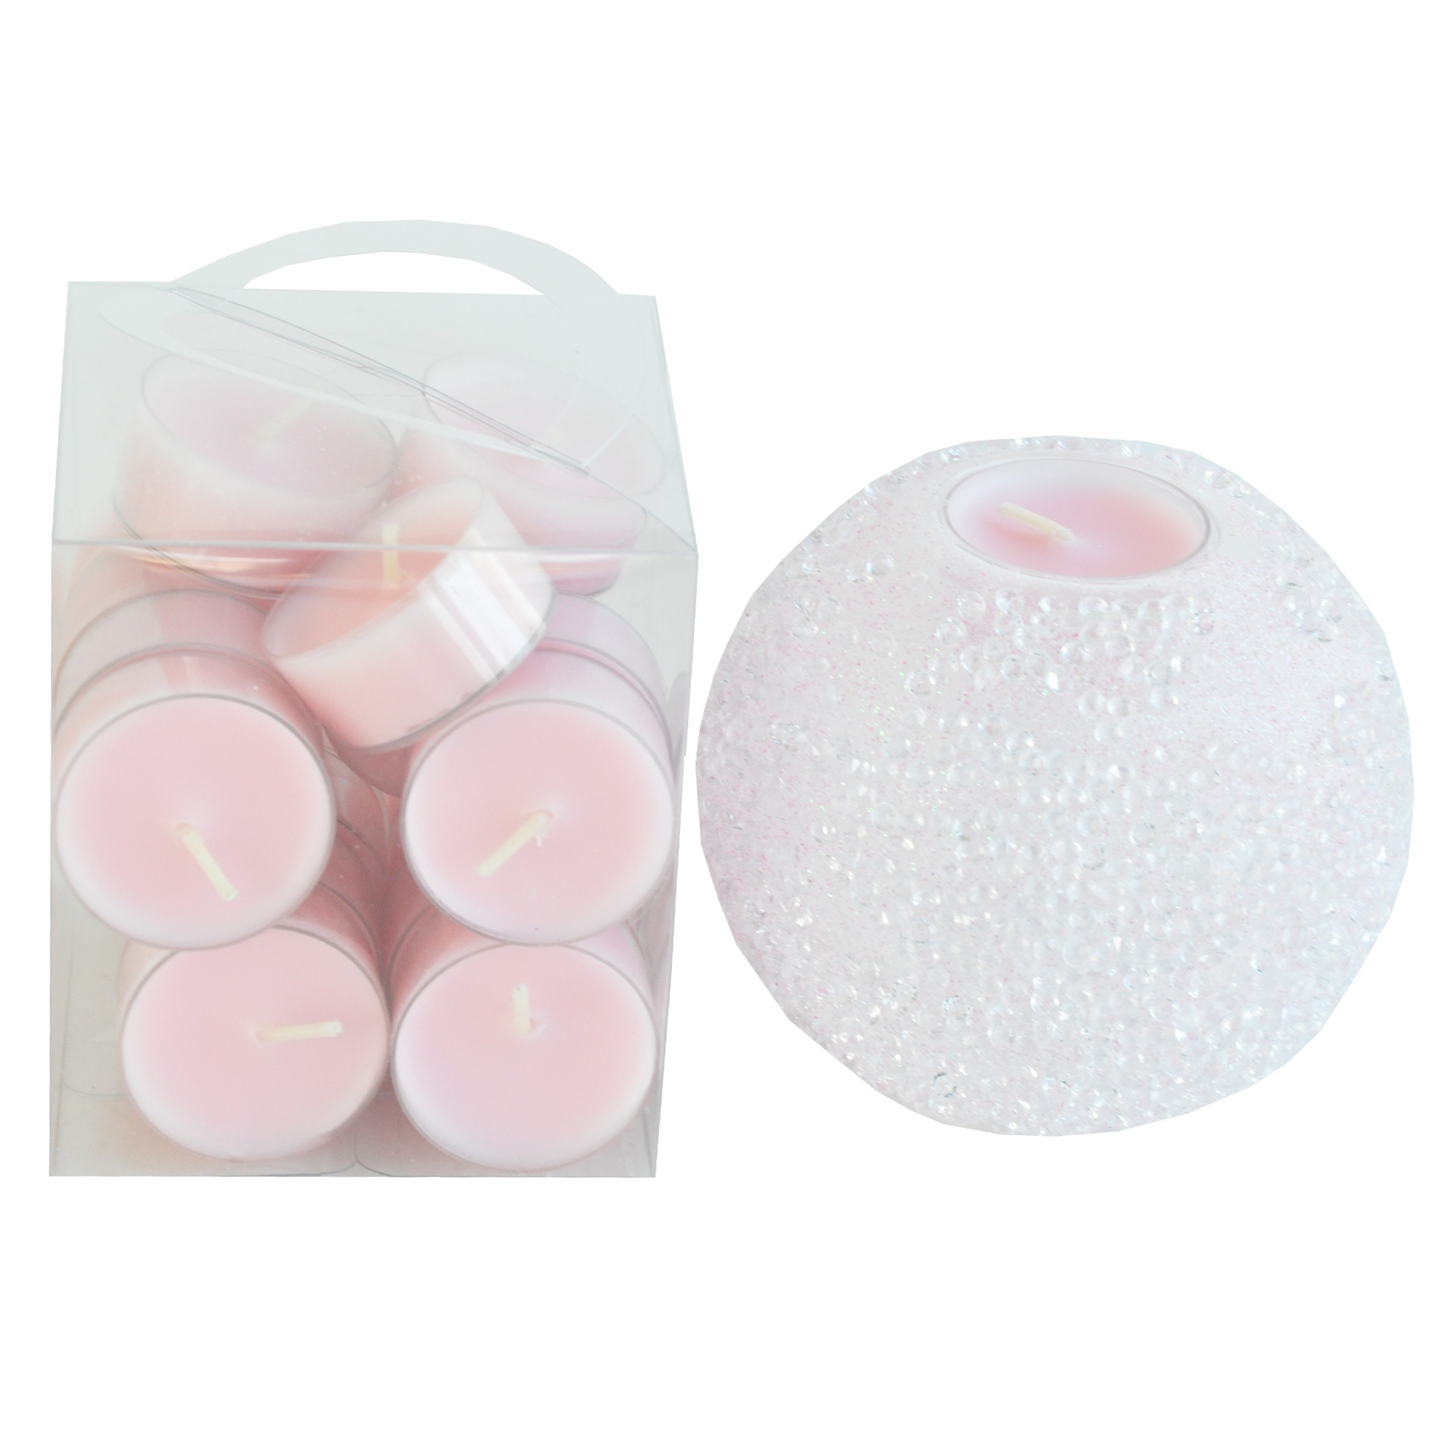 Finnmari lahjapakkaus lämpökynttilärasia vaaleanpunainen, valkoinen lasi